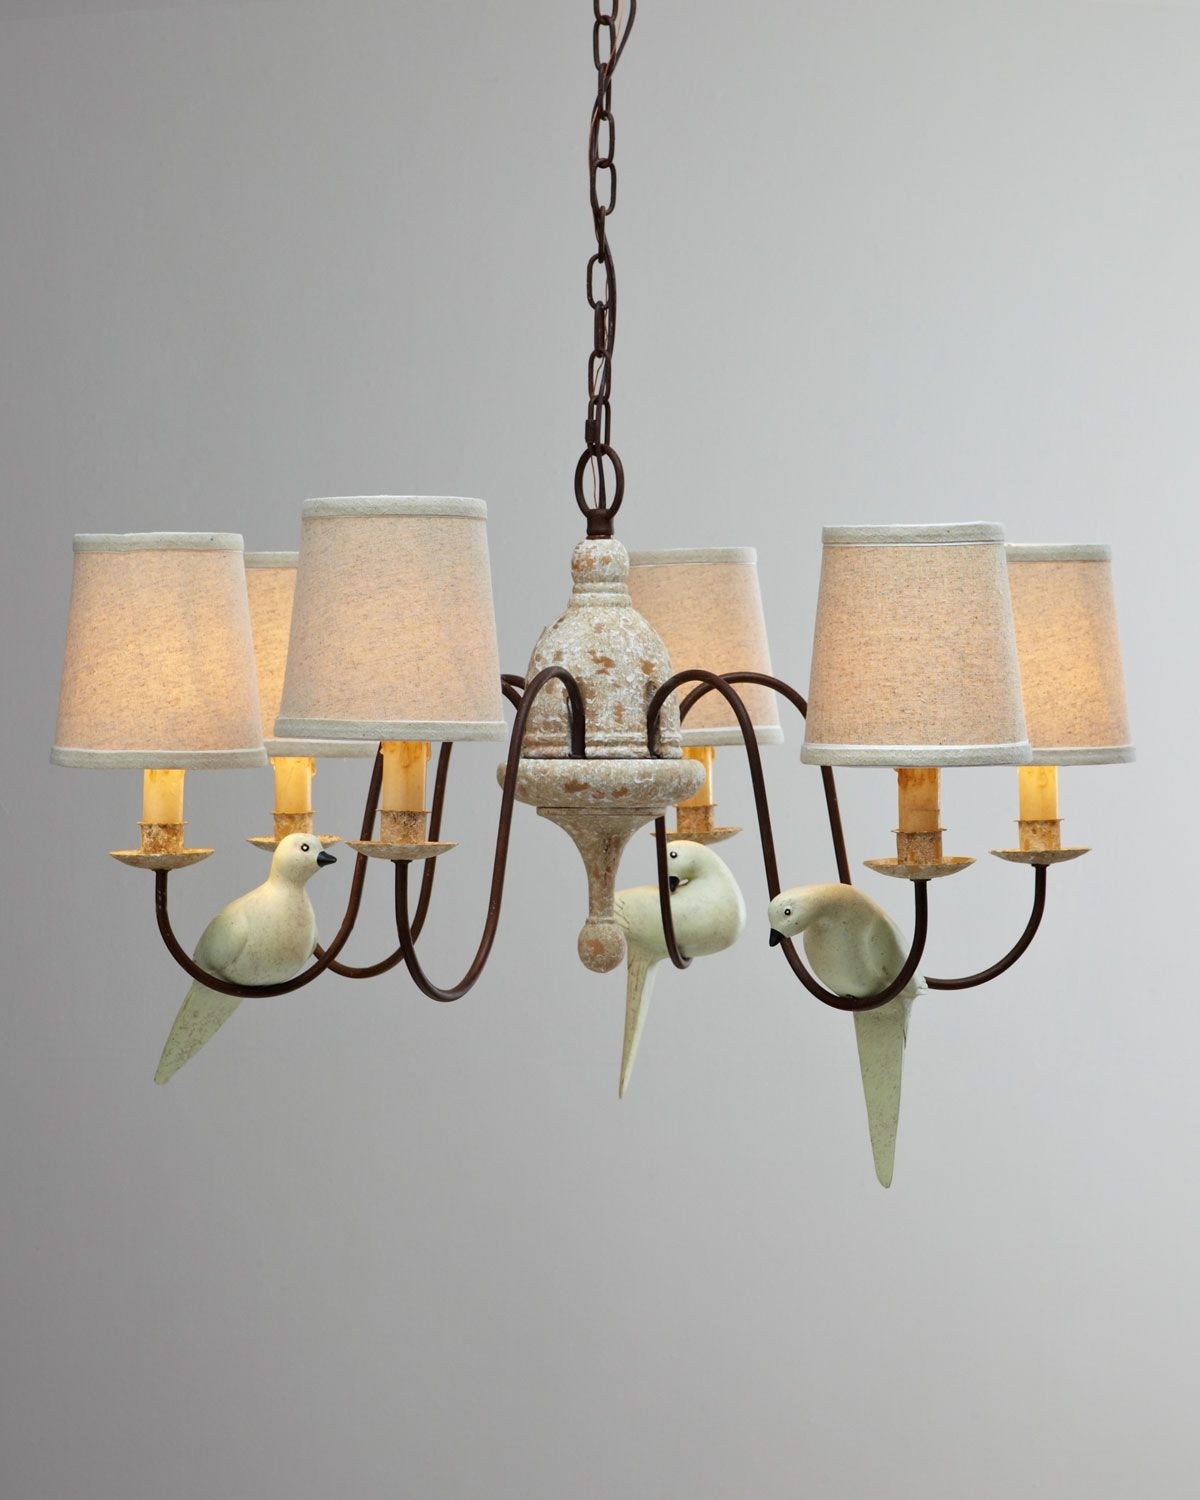 Regina andrew design bird chandelier horchow